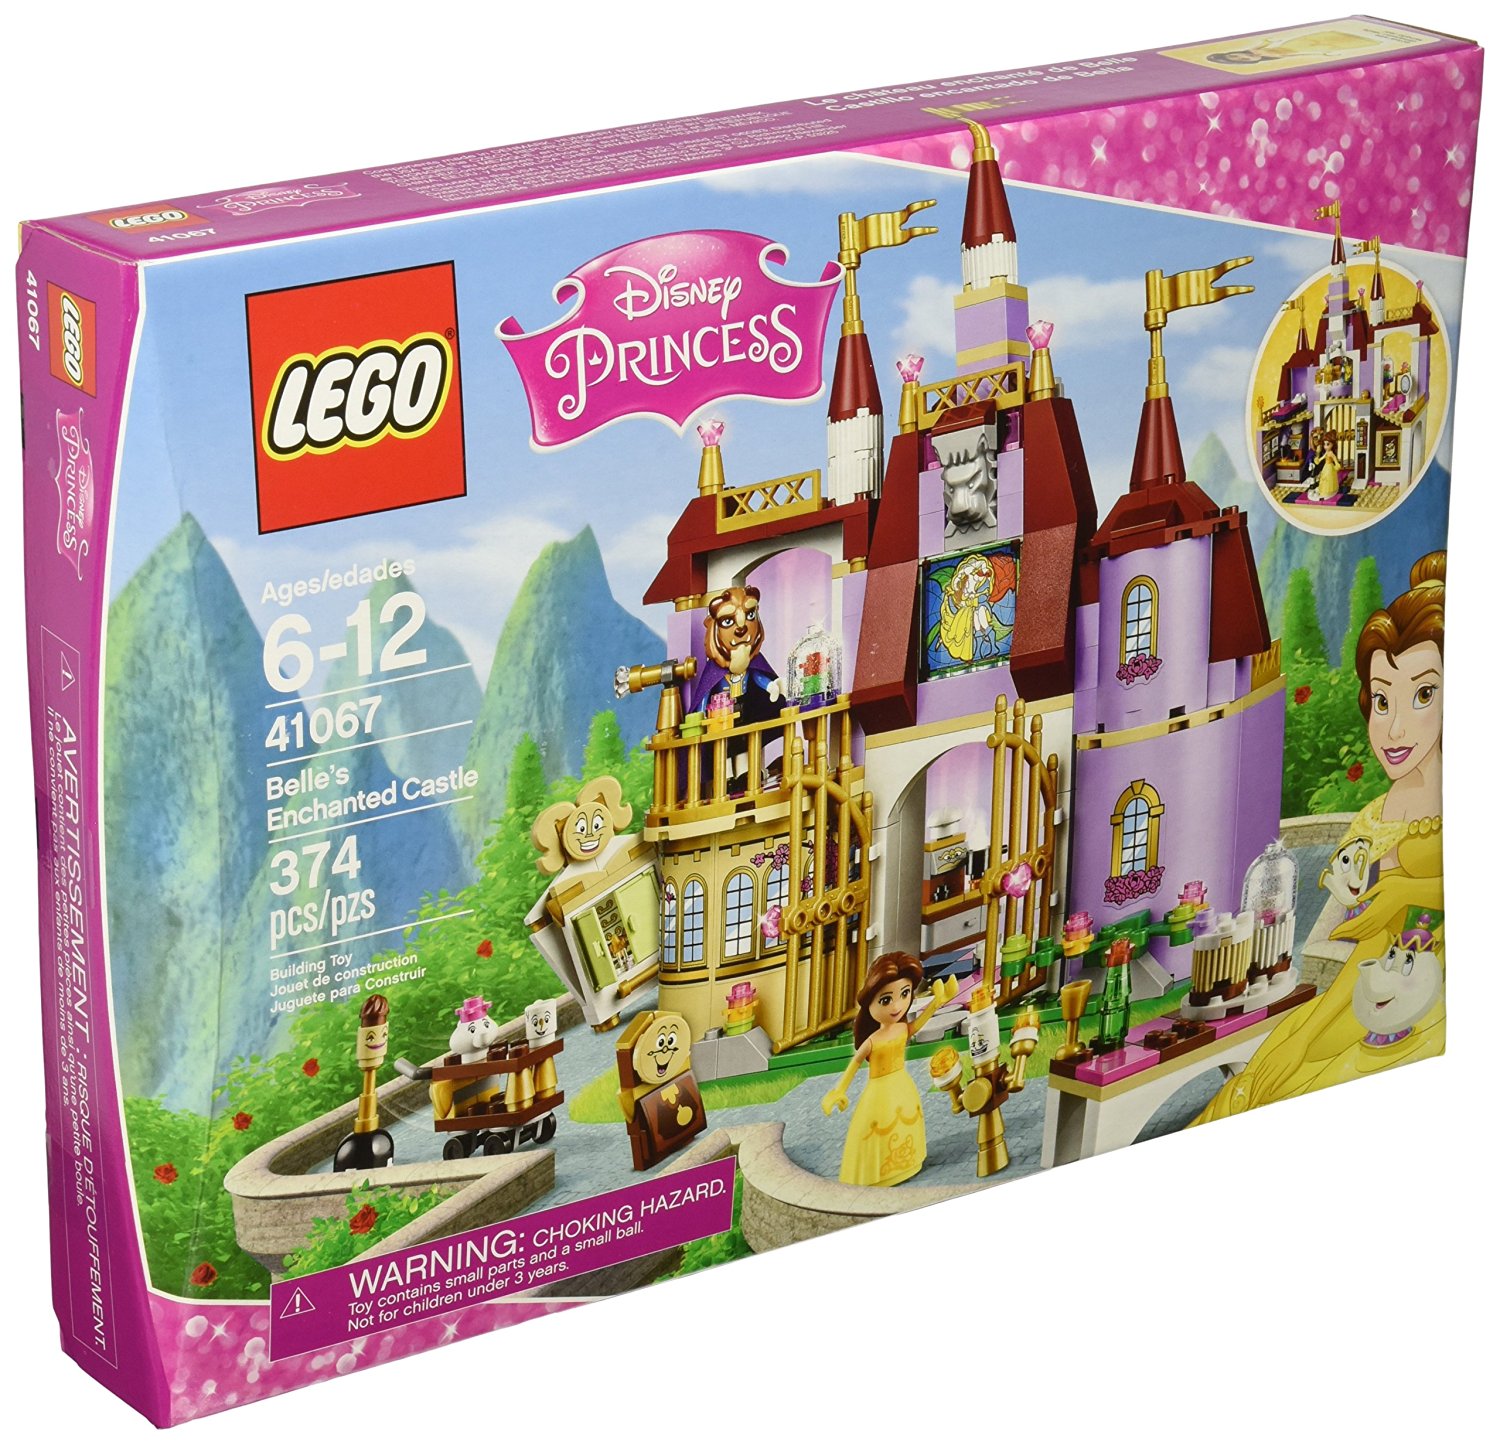 LEGO Disney Princess Belle’s Enchanted Castle Building Kit